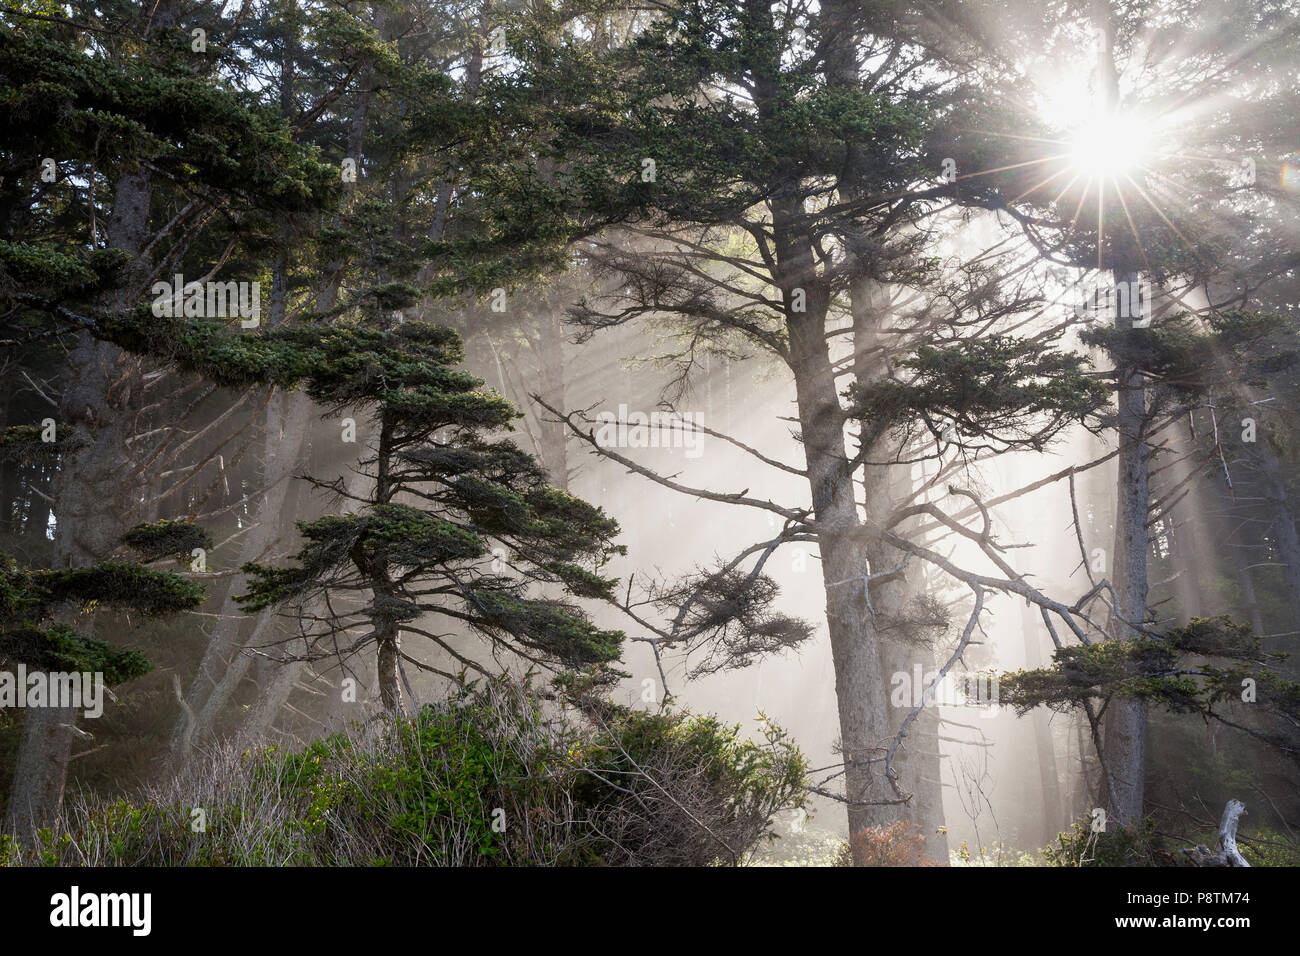 WA14560-00...WASHINGTON - la luce del sole in presenza di striature attraverso gli alberi lungo la spiaggia Rialito nel Parco Nazionale di Olympic. Foto Stock